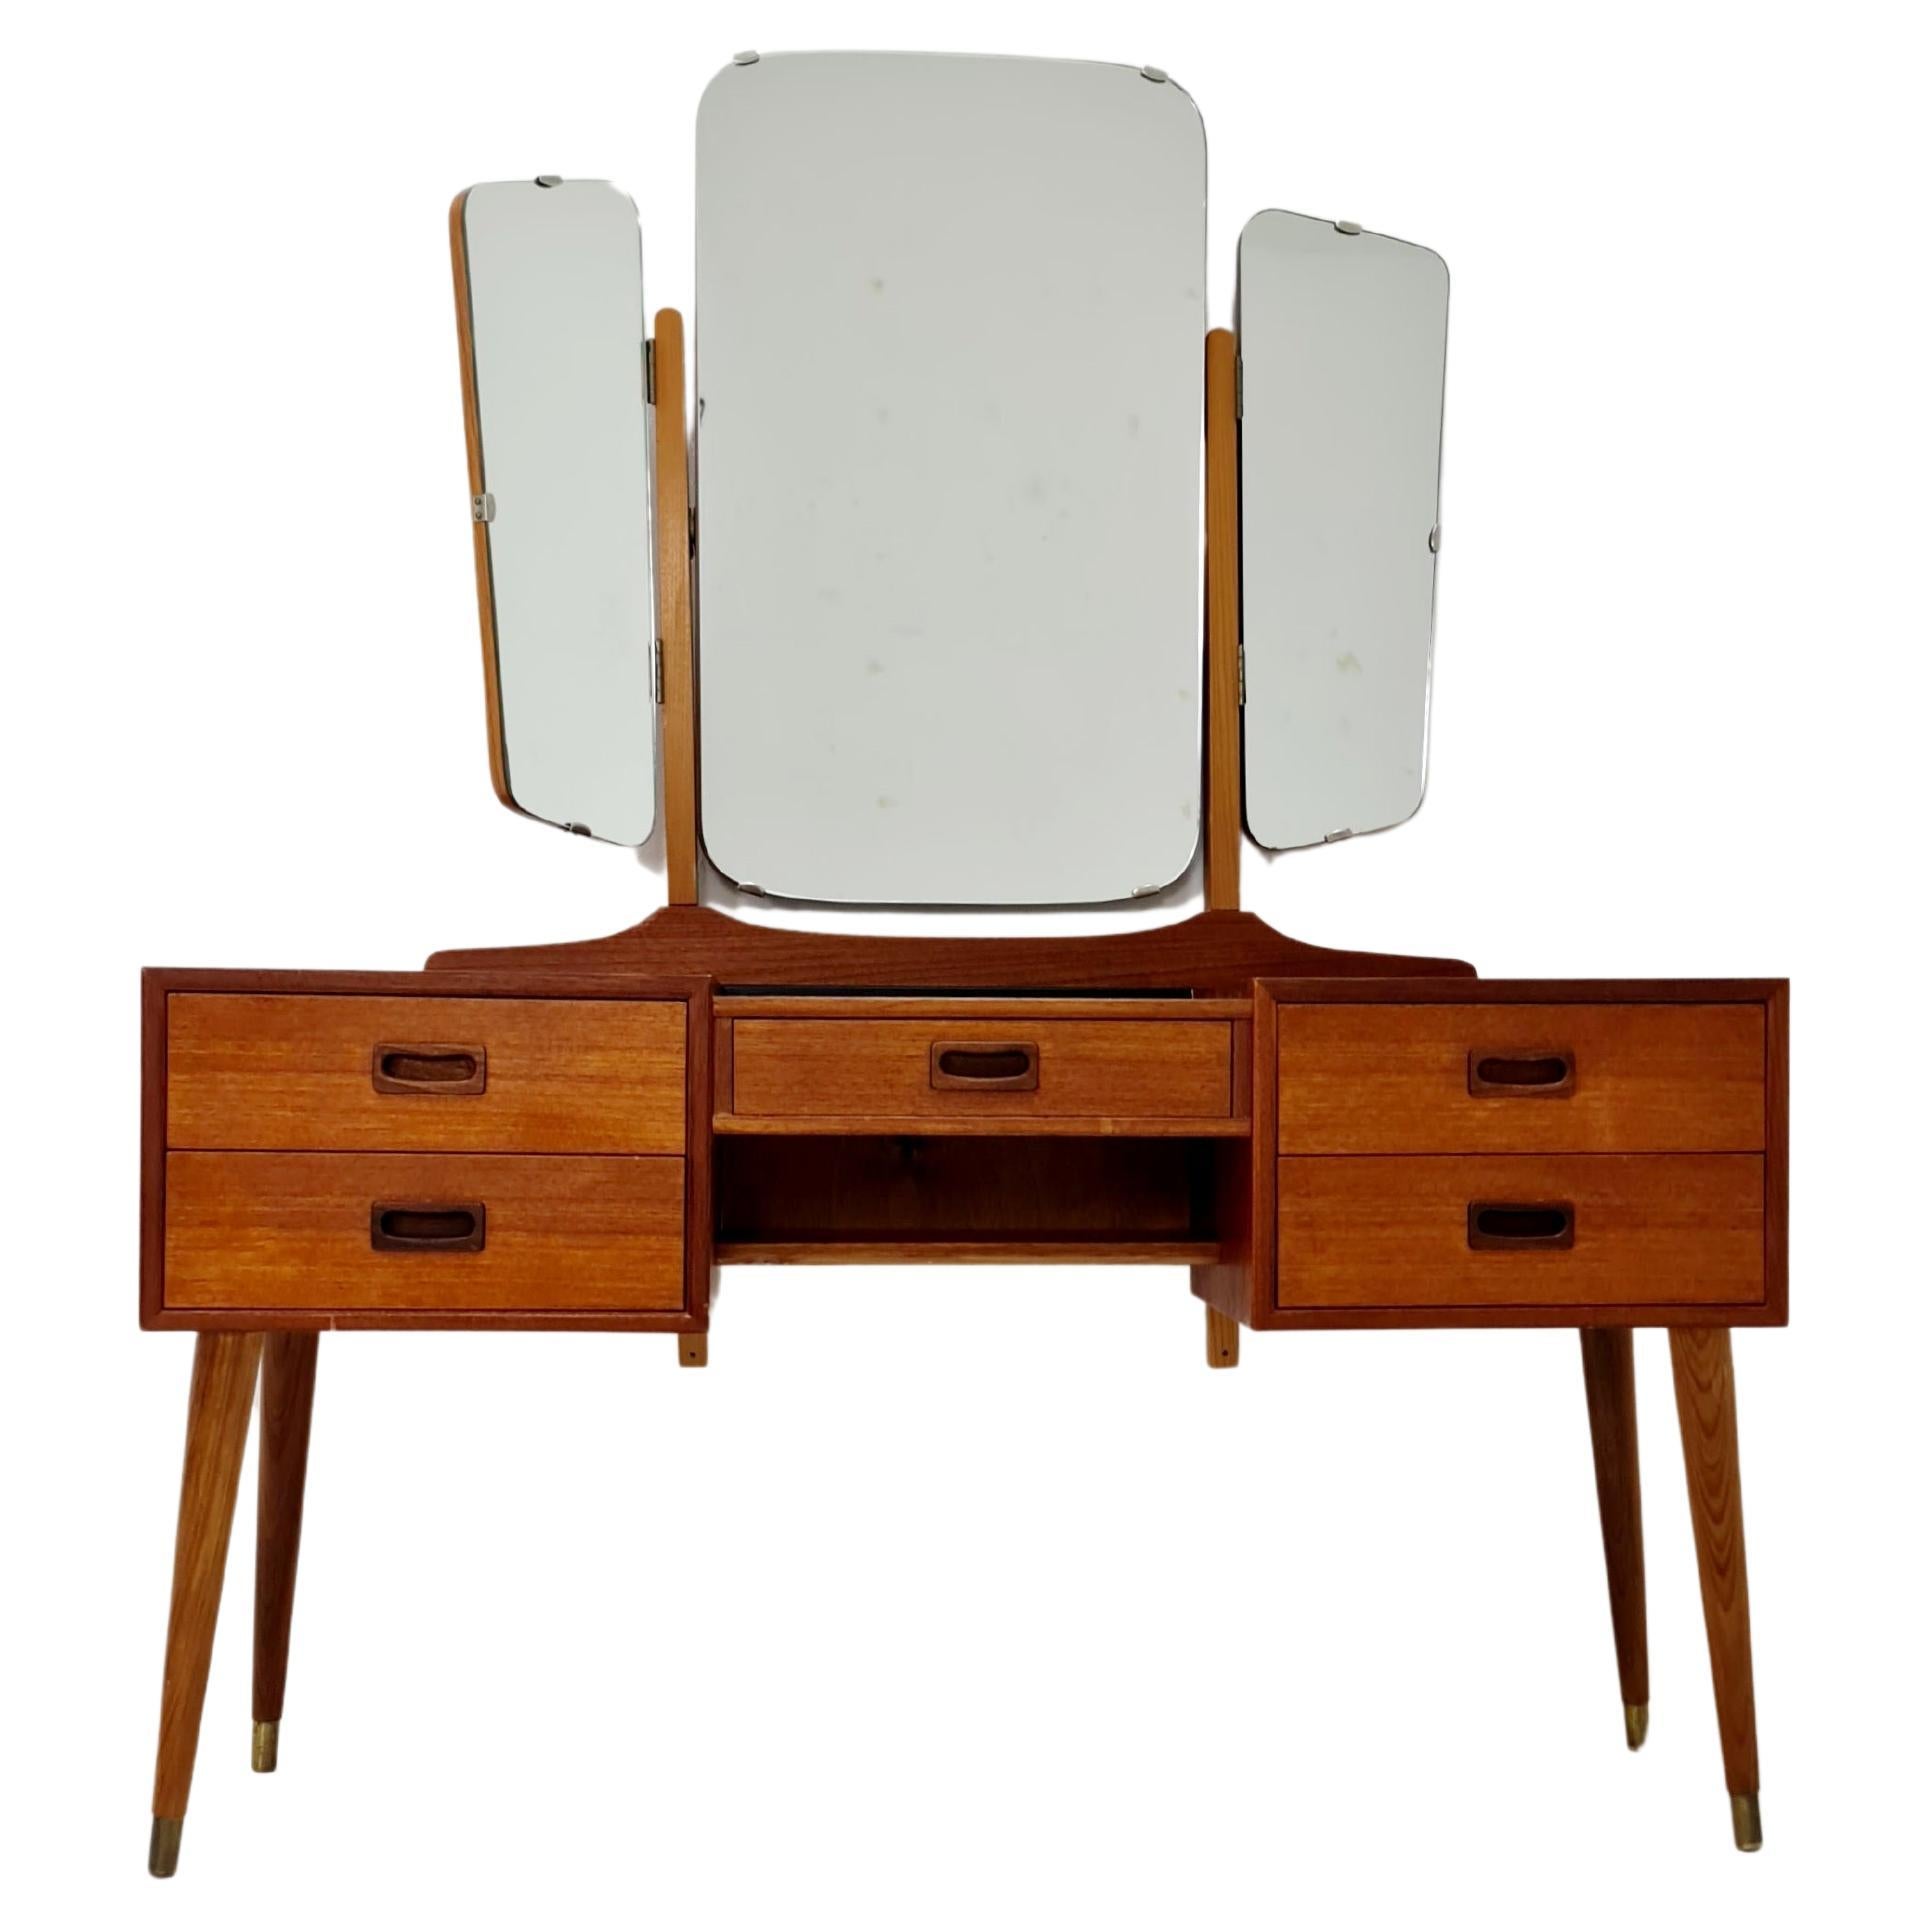 Modern Danish Teak vanity table with stool make up table by Fröseke 1960